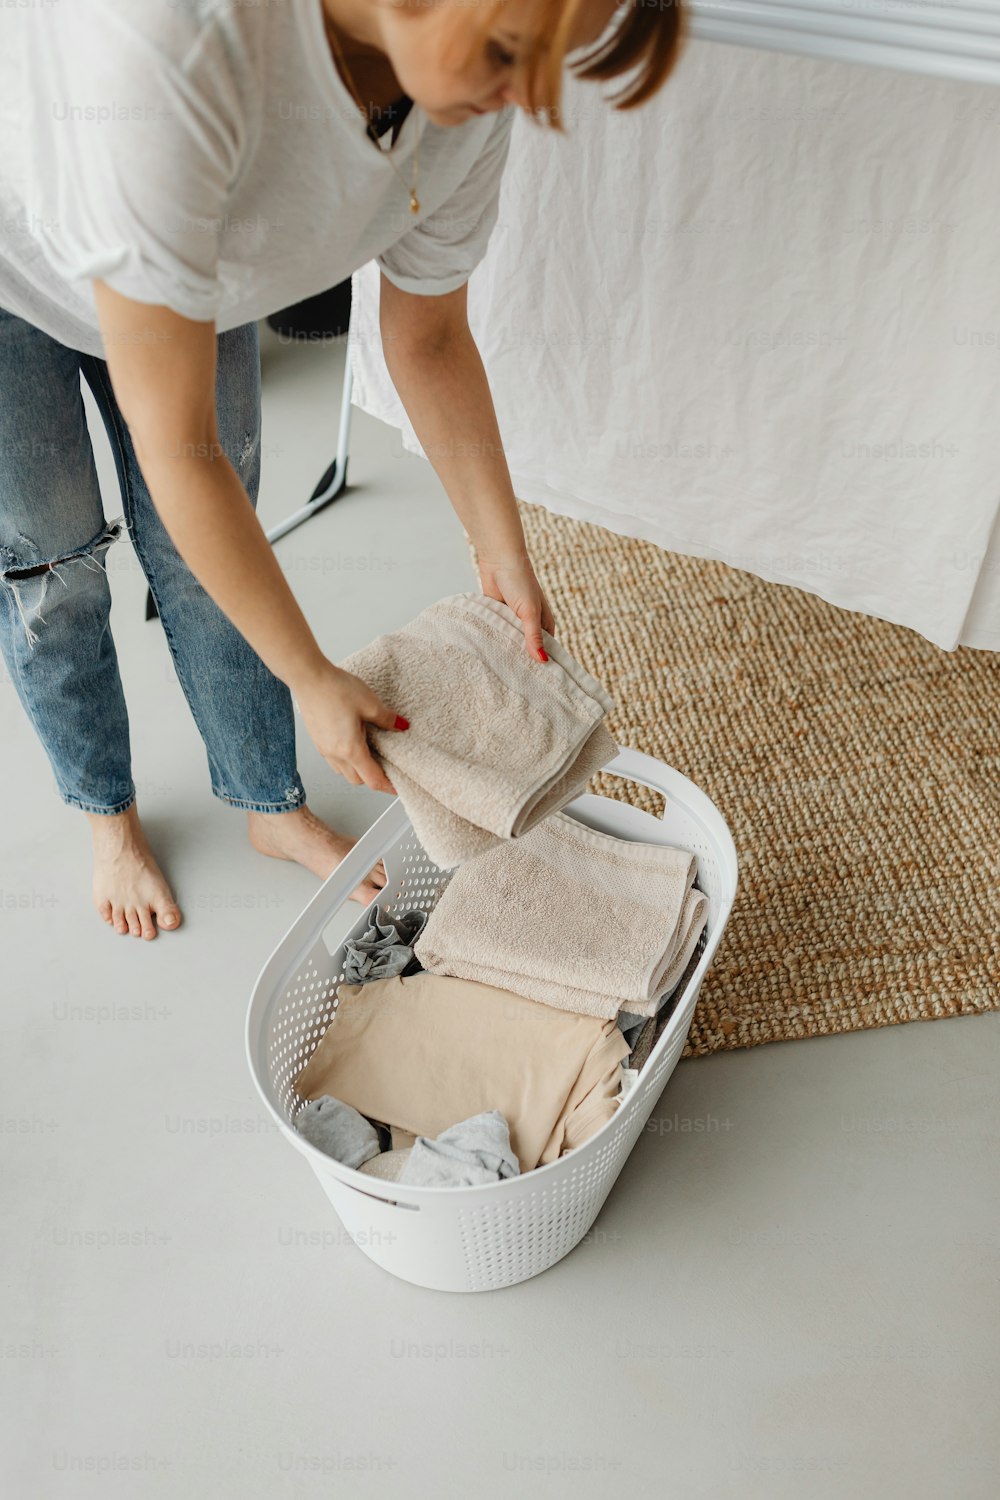 Une femme déballant des vêtements dans un panier